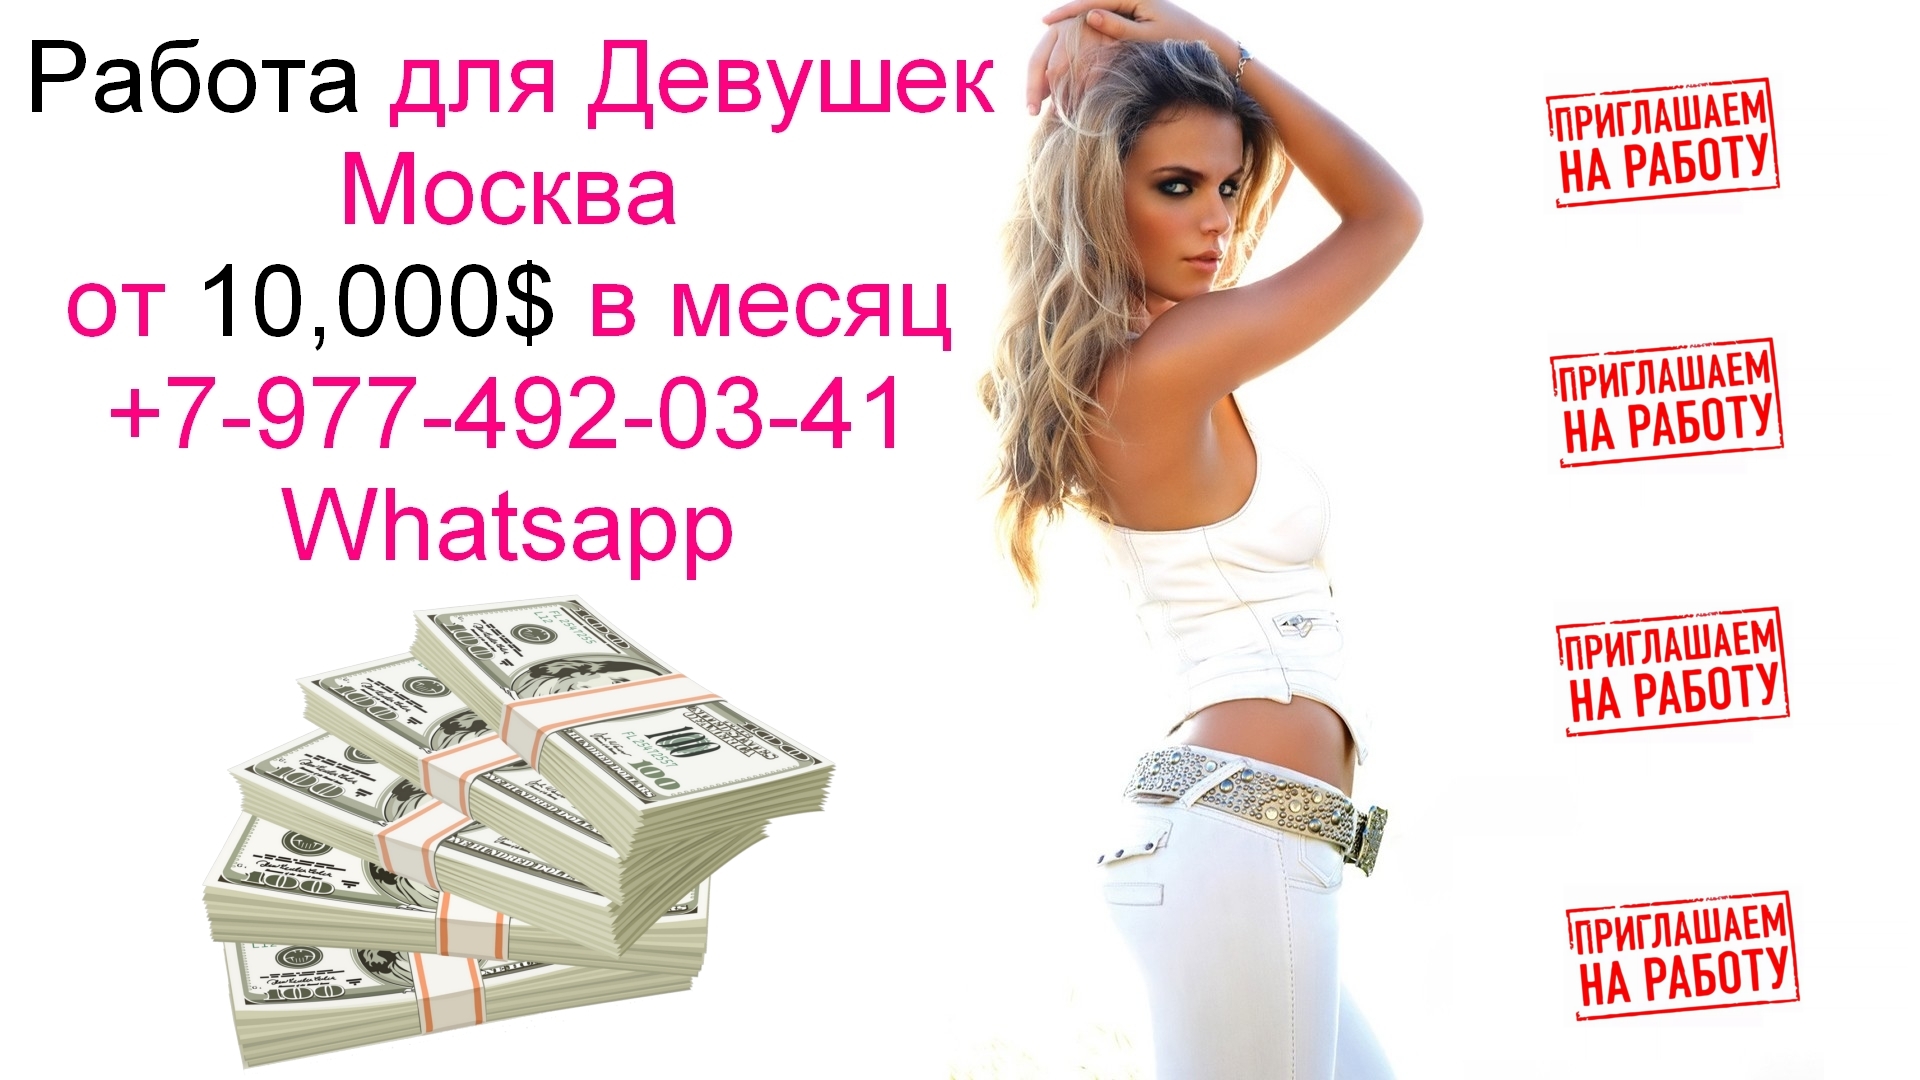 Работа для девушек в Москве с оплатой от 10,000$